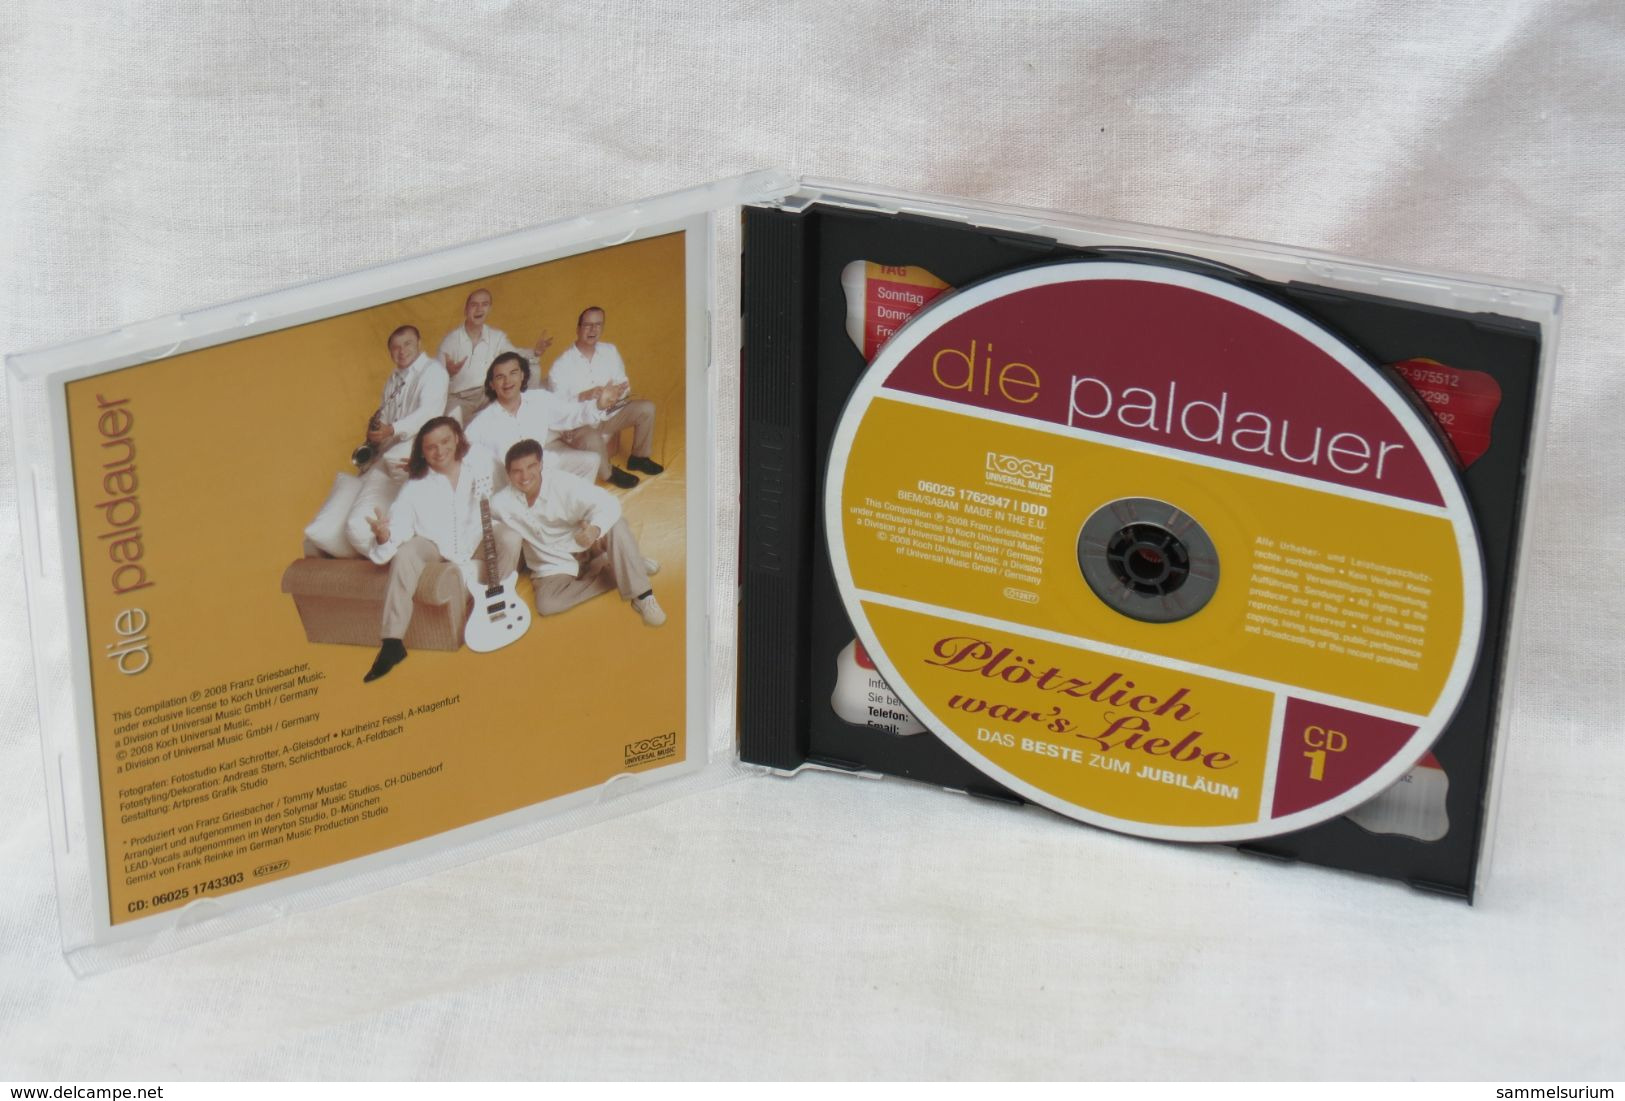 2 CDs "Die Paldauer" Plötzlich War's Liebe, Das Beste Zum Jubiläum - Autres - Musique Allemande